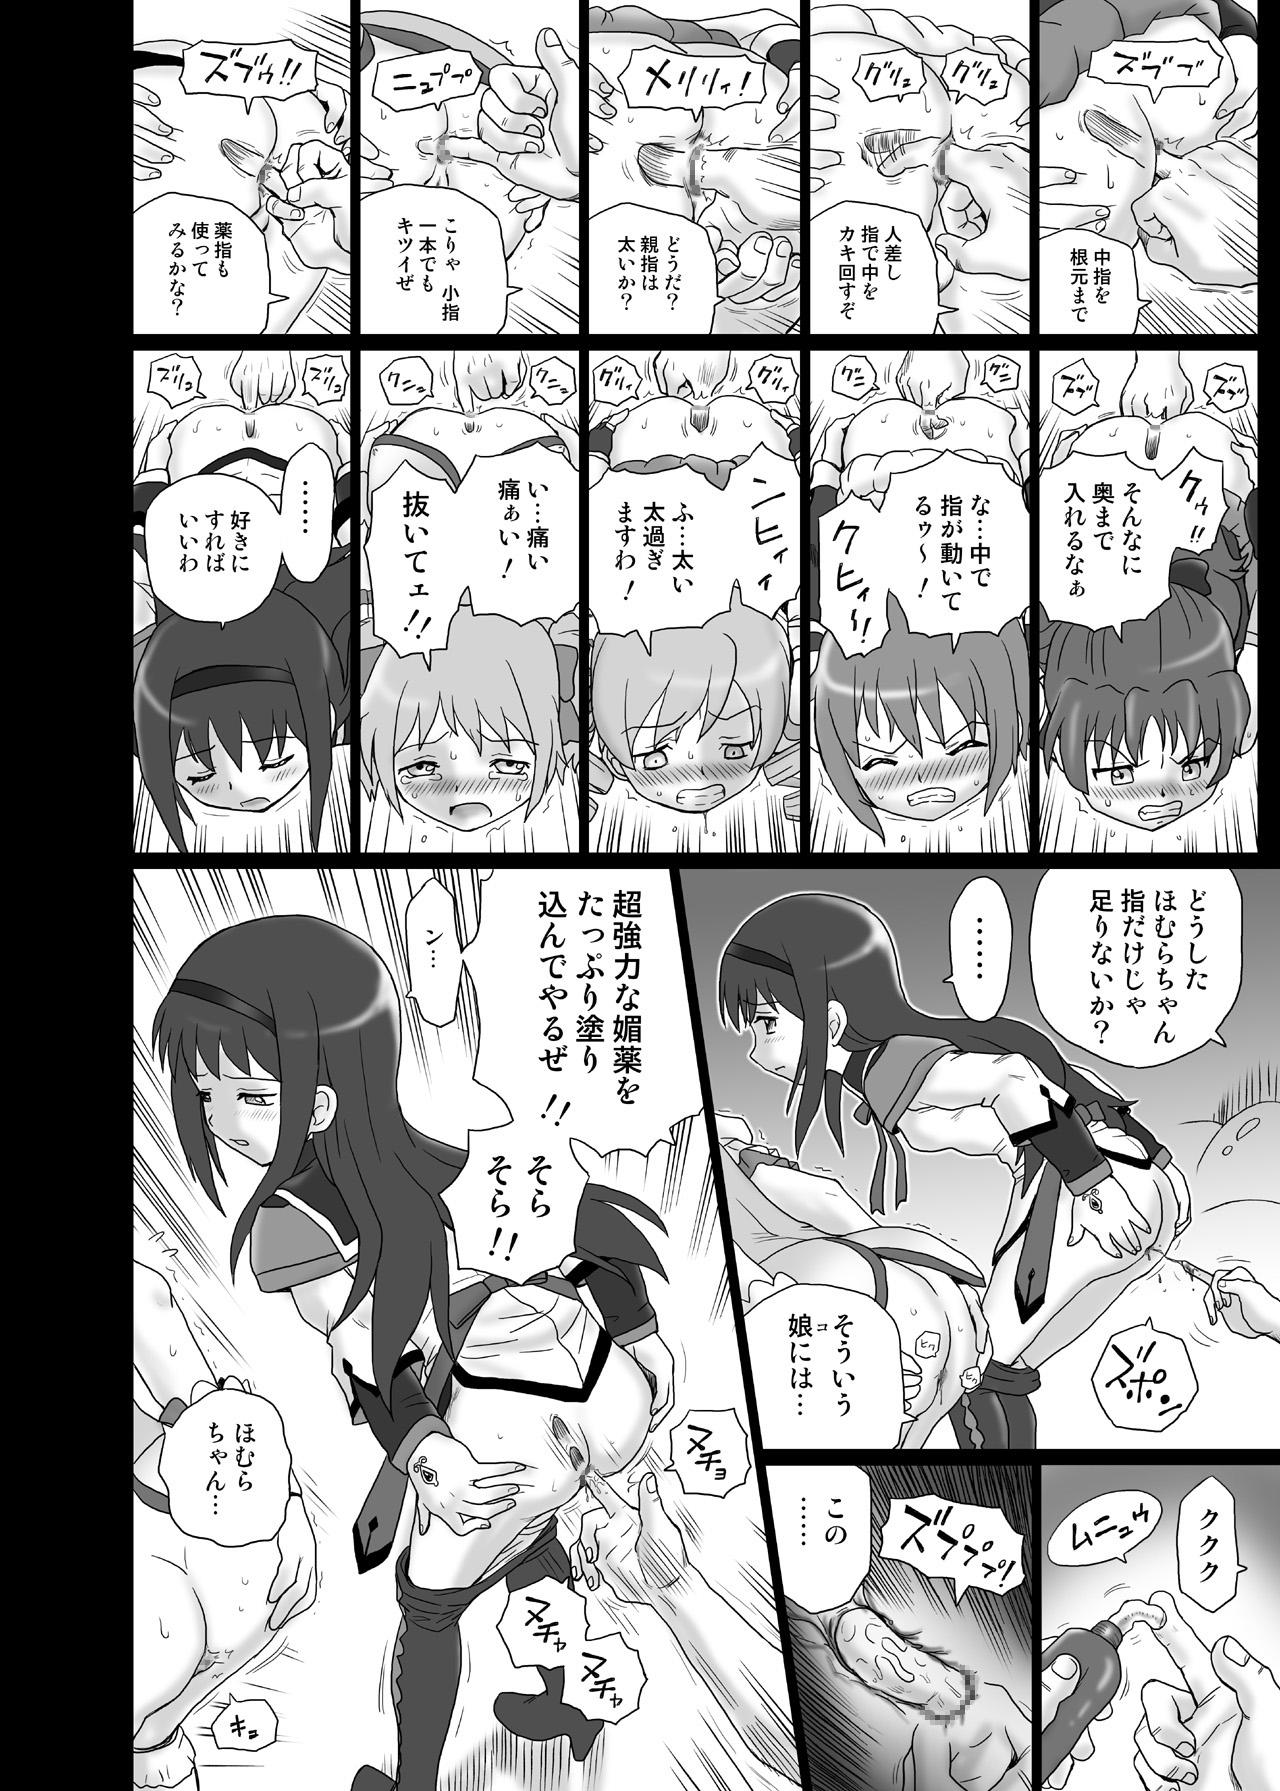 Nudity "Mado★Magi" Anal & Scatolo Sakuhinshuu - Puella magi madoka magica Step Fantasy - Page 7